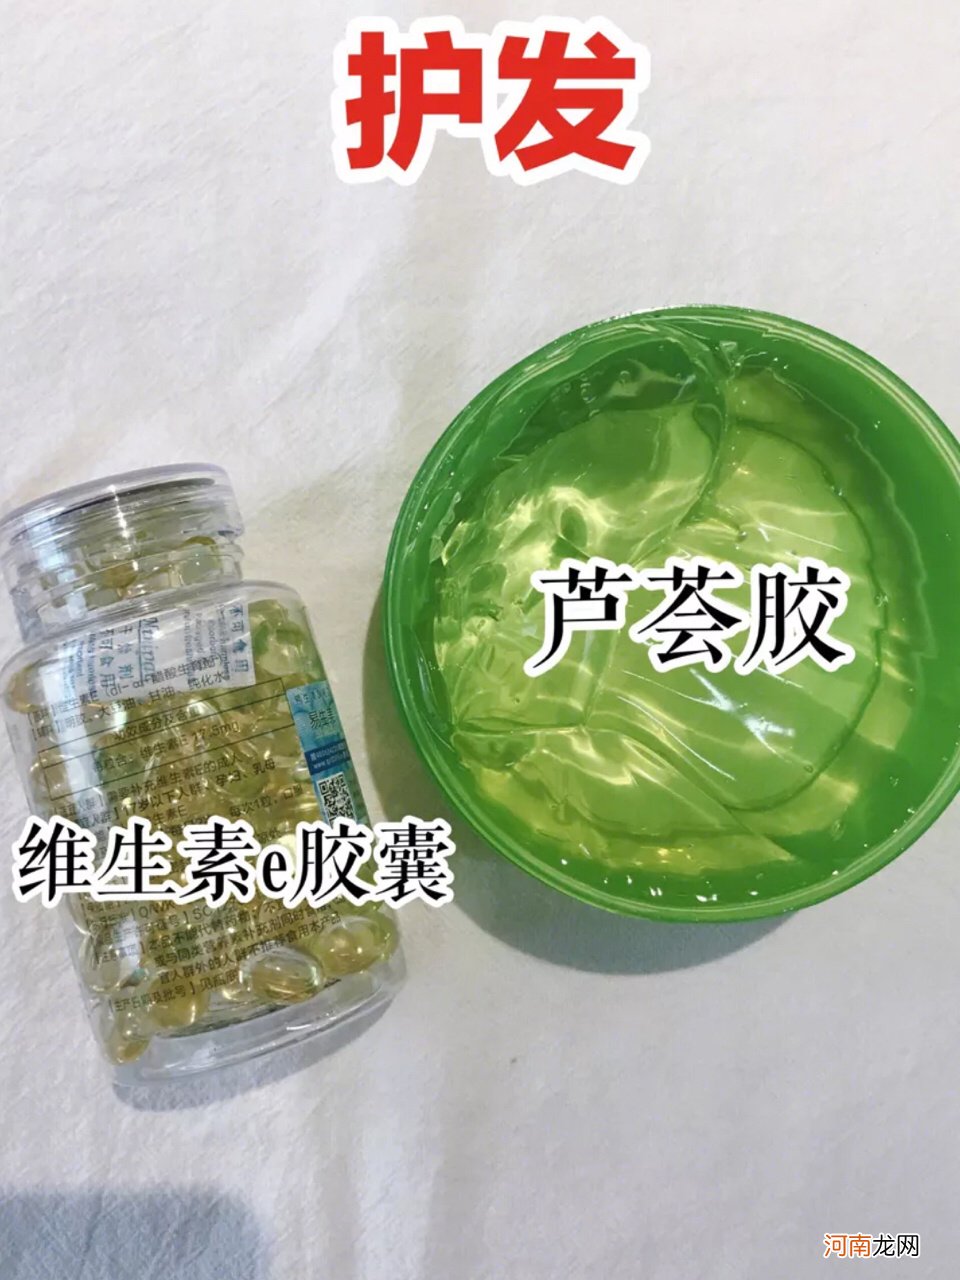 芦荟胶的正确用法 芦荟胶的正确用法步骤图